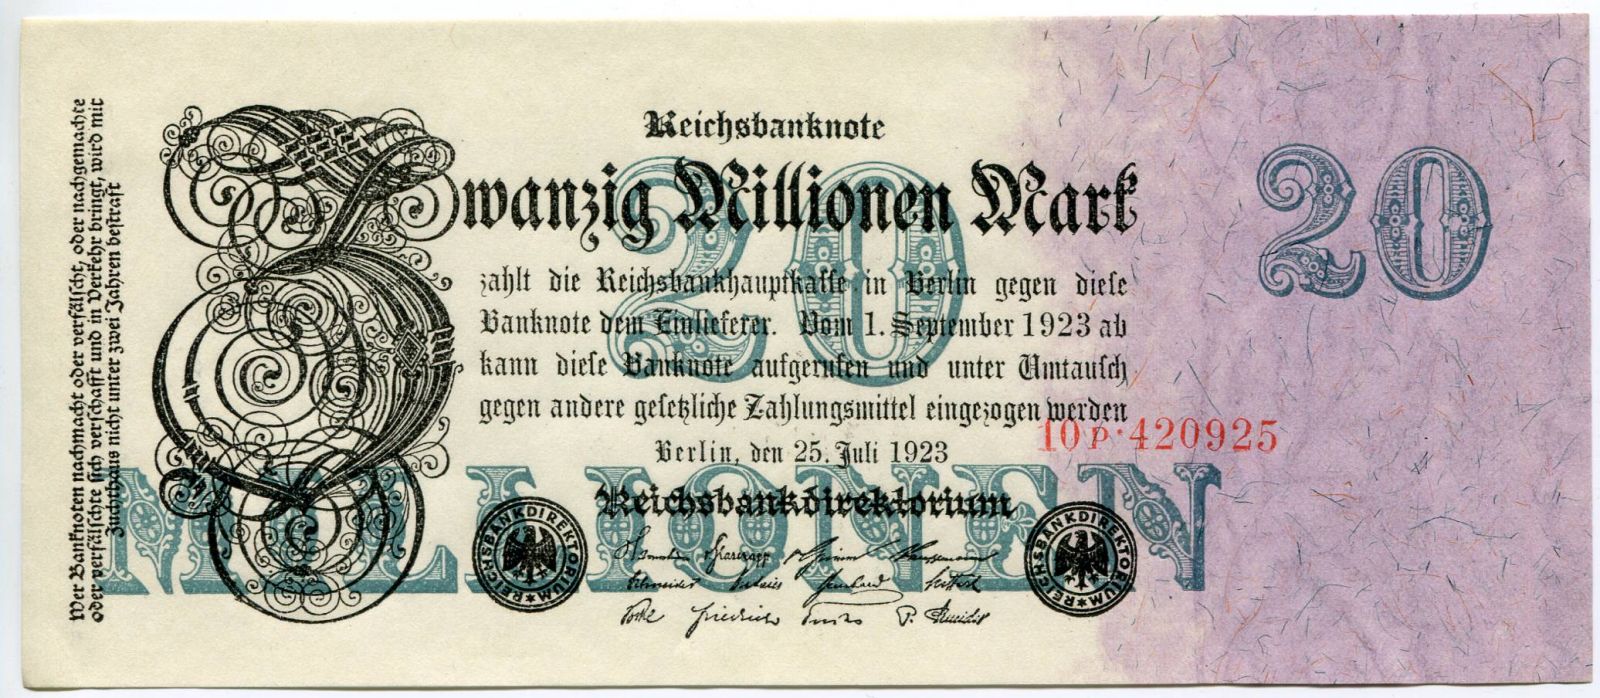 (1923) Ros. 96b / Pi. 97b - Niemcy - banknot 20 000 000 marek - UNC (seria P)